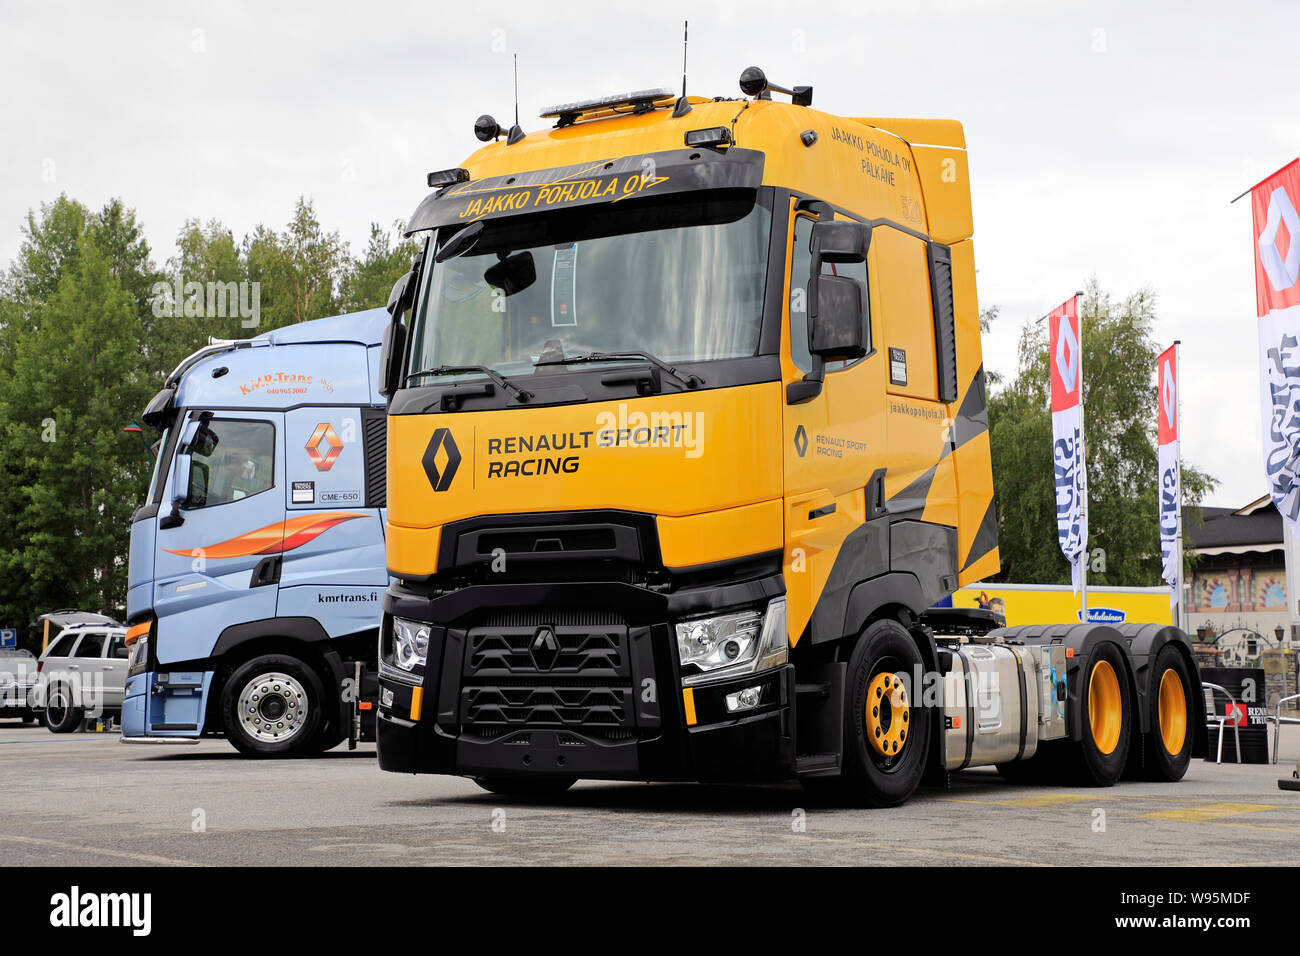 Alaharma, Finnland. August 9, 2019. Renault Trucks T Hohe Renault Sport Racing, limitierte Auflage von 100 Fahrzeugen insgesamt, auf Power Truck Show 2019. Stockfoto